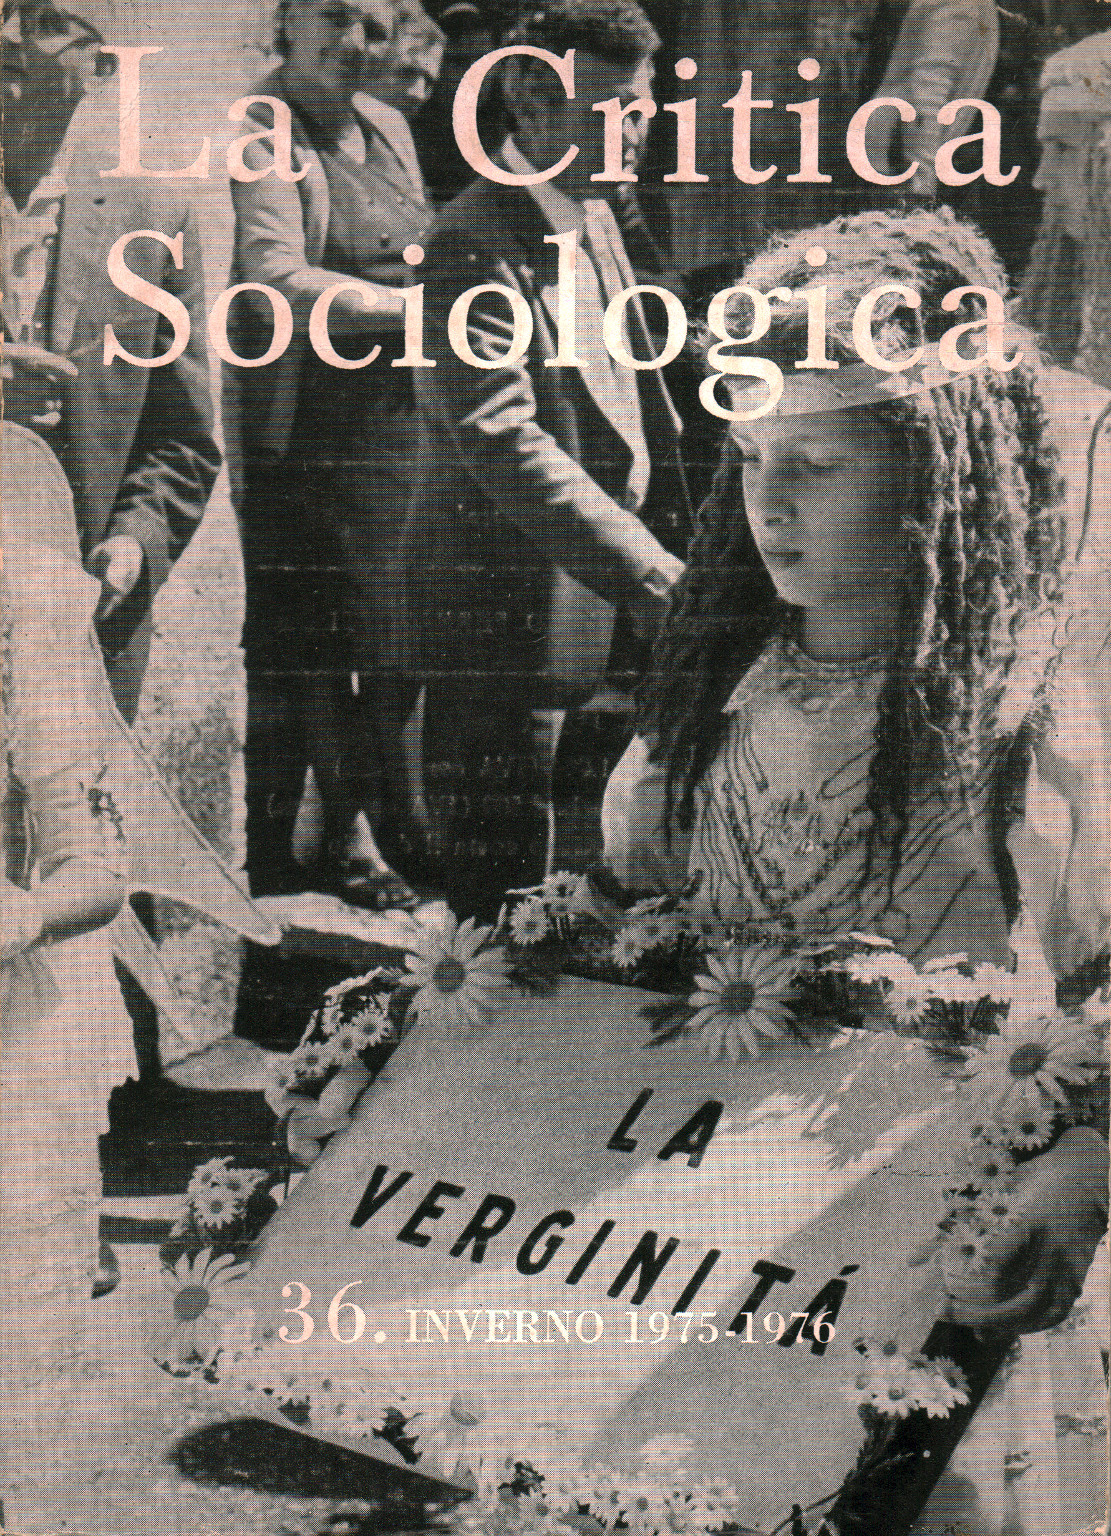 La Critique Sociologique pas. 36. L'hiver 1975-1976, s.un.